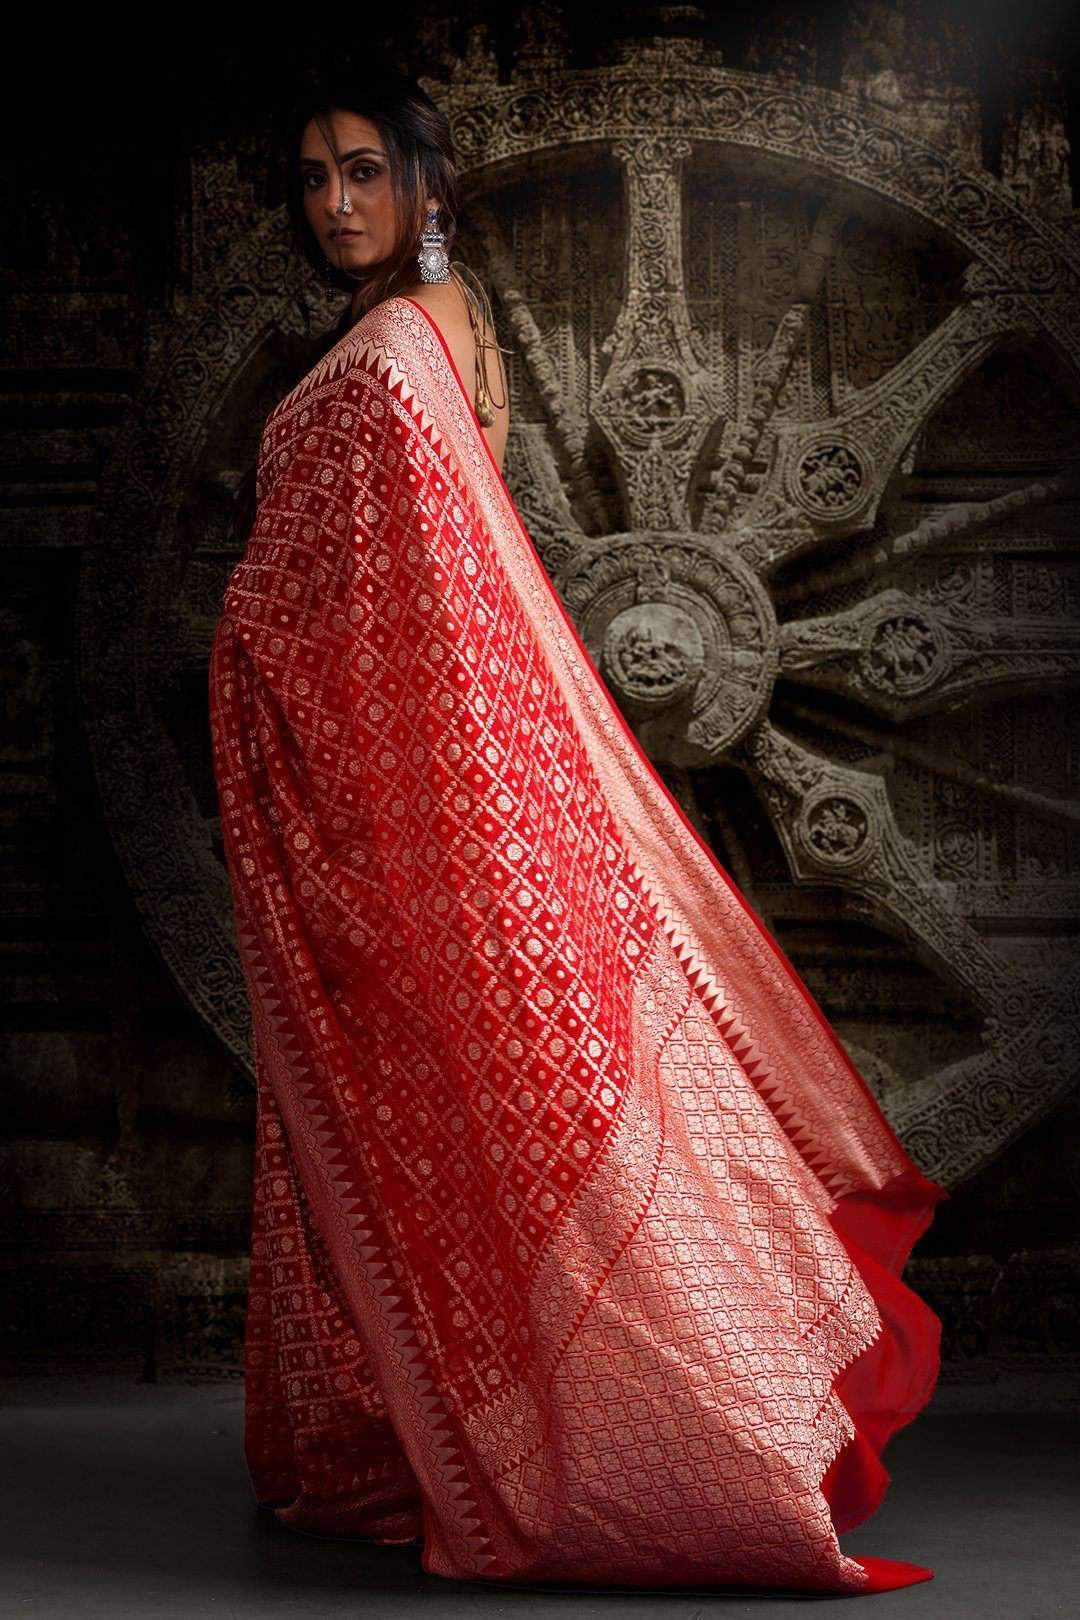 Vermilion Red Saree with Zari Geometric Woven Design